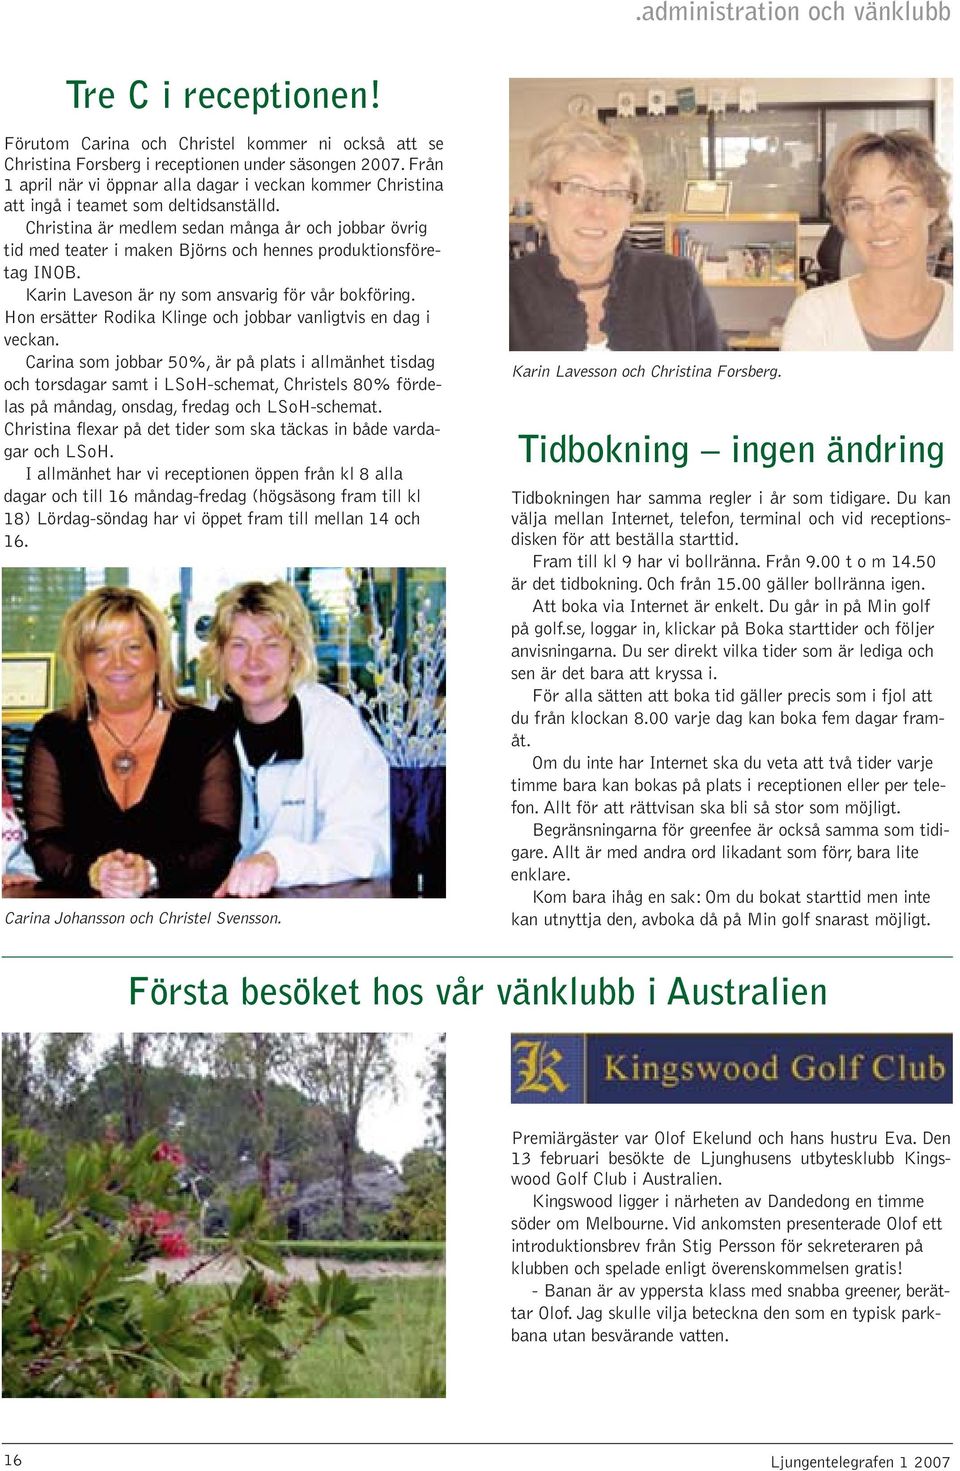 Christina är medlem sedan många år och jobbar övrig tid med teater i maken Björns och hennes produktionsföretag INOB. Karin Laveson är ny som ansvarig för vår bokföring.